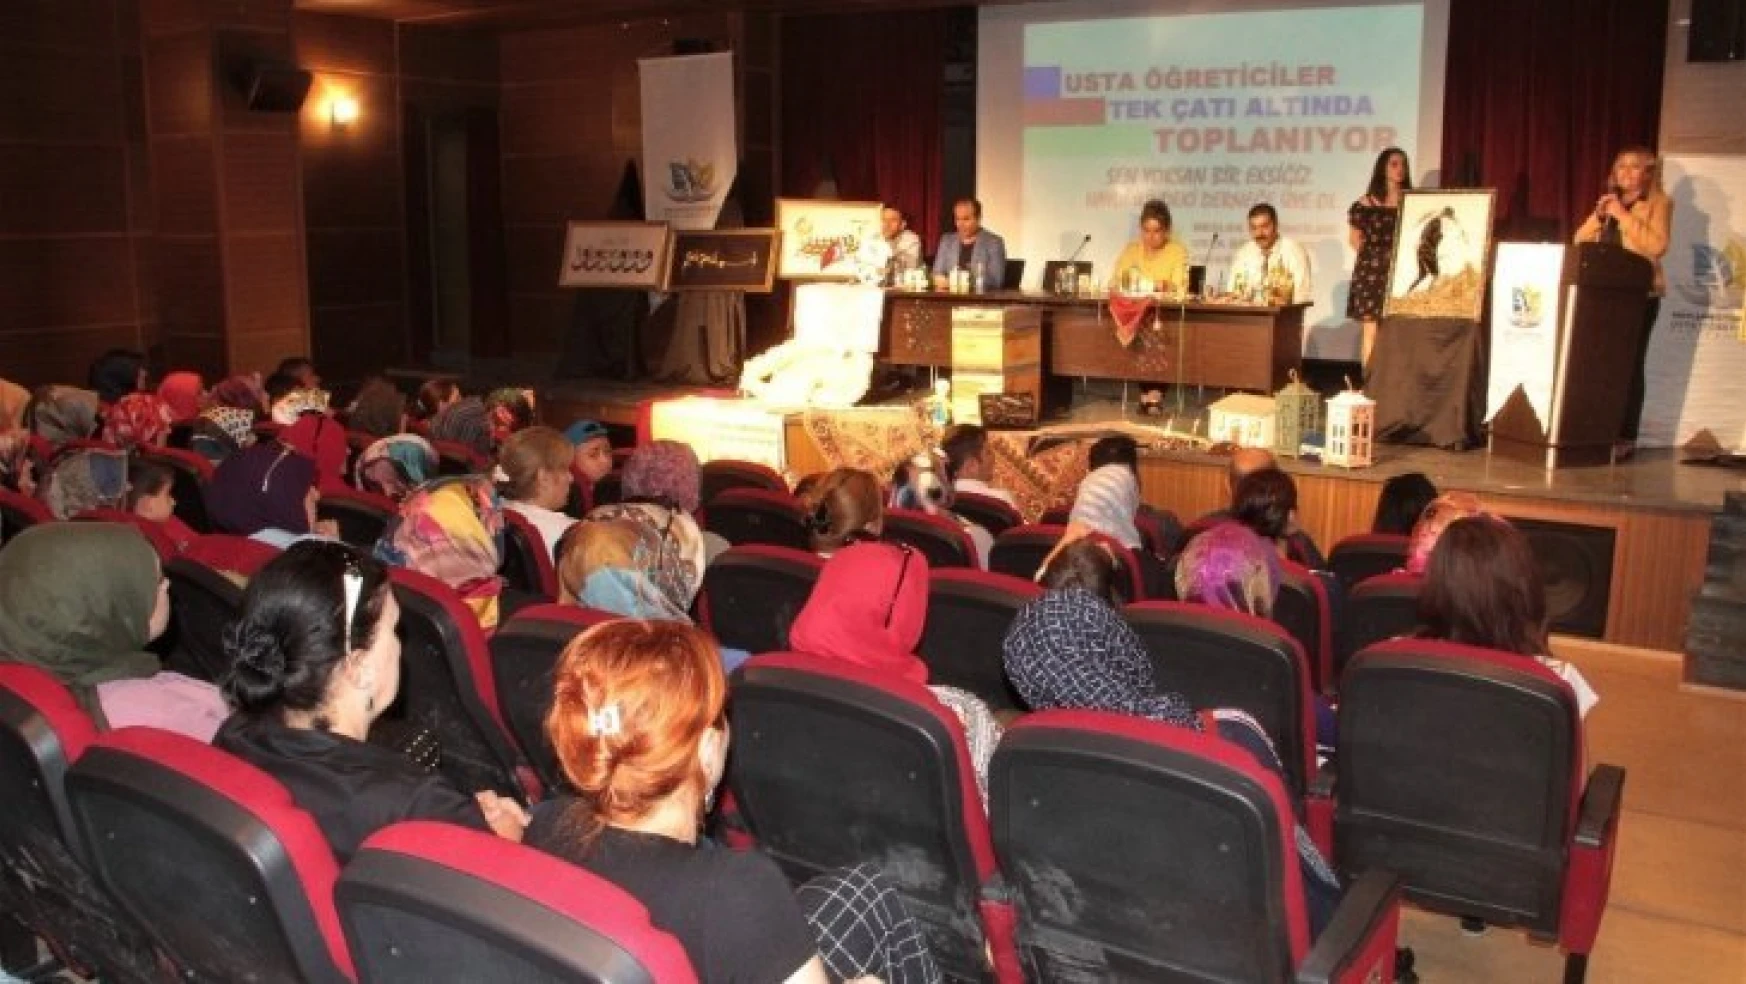 Elazığ'da Usta Öğreticiler Tek Çatı Altında Toplanıyor Semineri